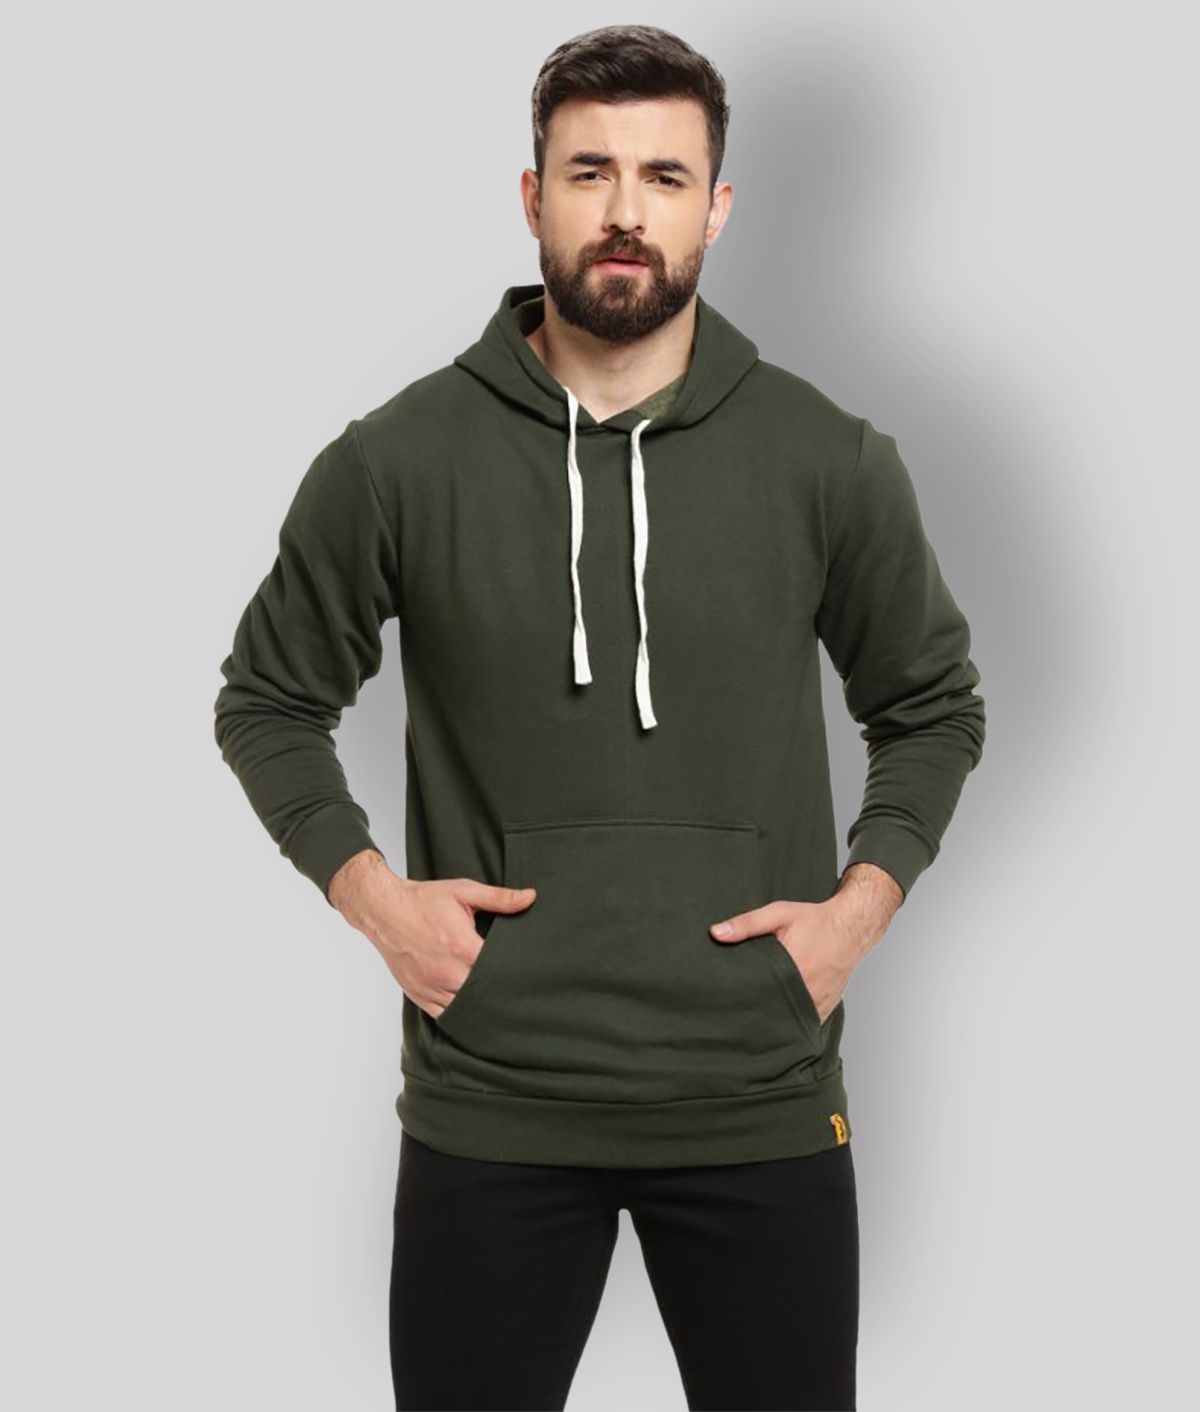     			Campus Sutra - Green Fleece Regular Fit Men's Sweatshirt ( Pack of 1 )